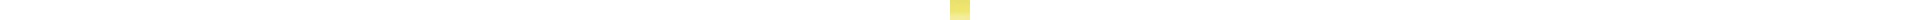 Crayon de couleur DERWENT Inktense DERWENT Inktense:0100-citron givre